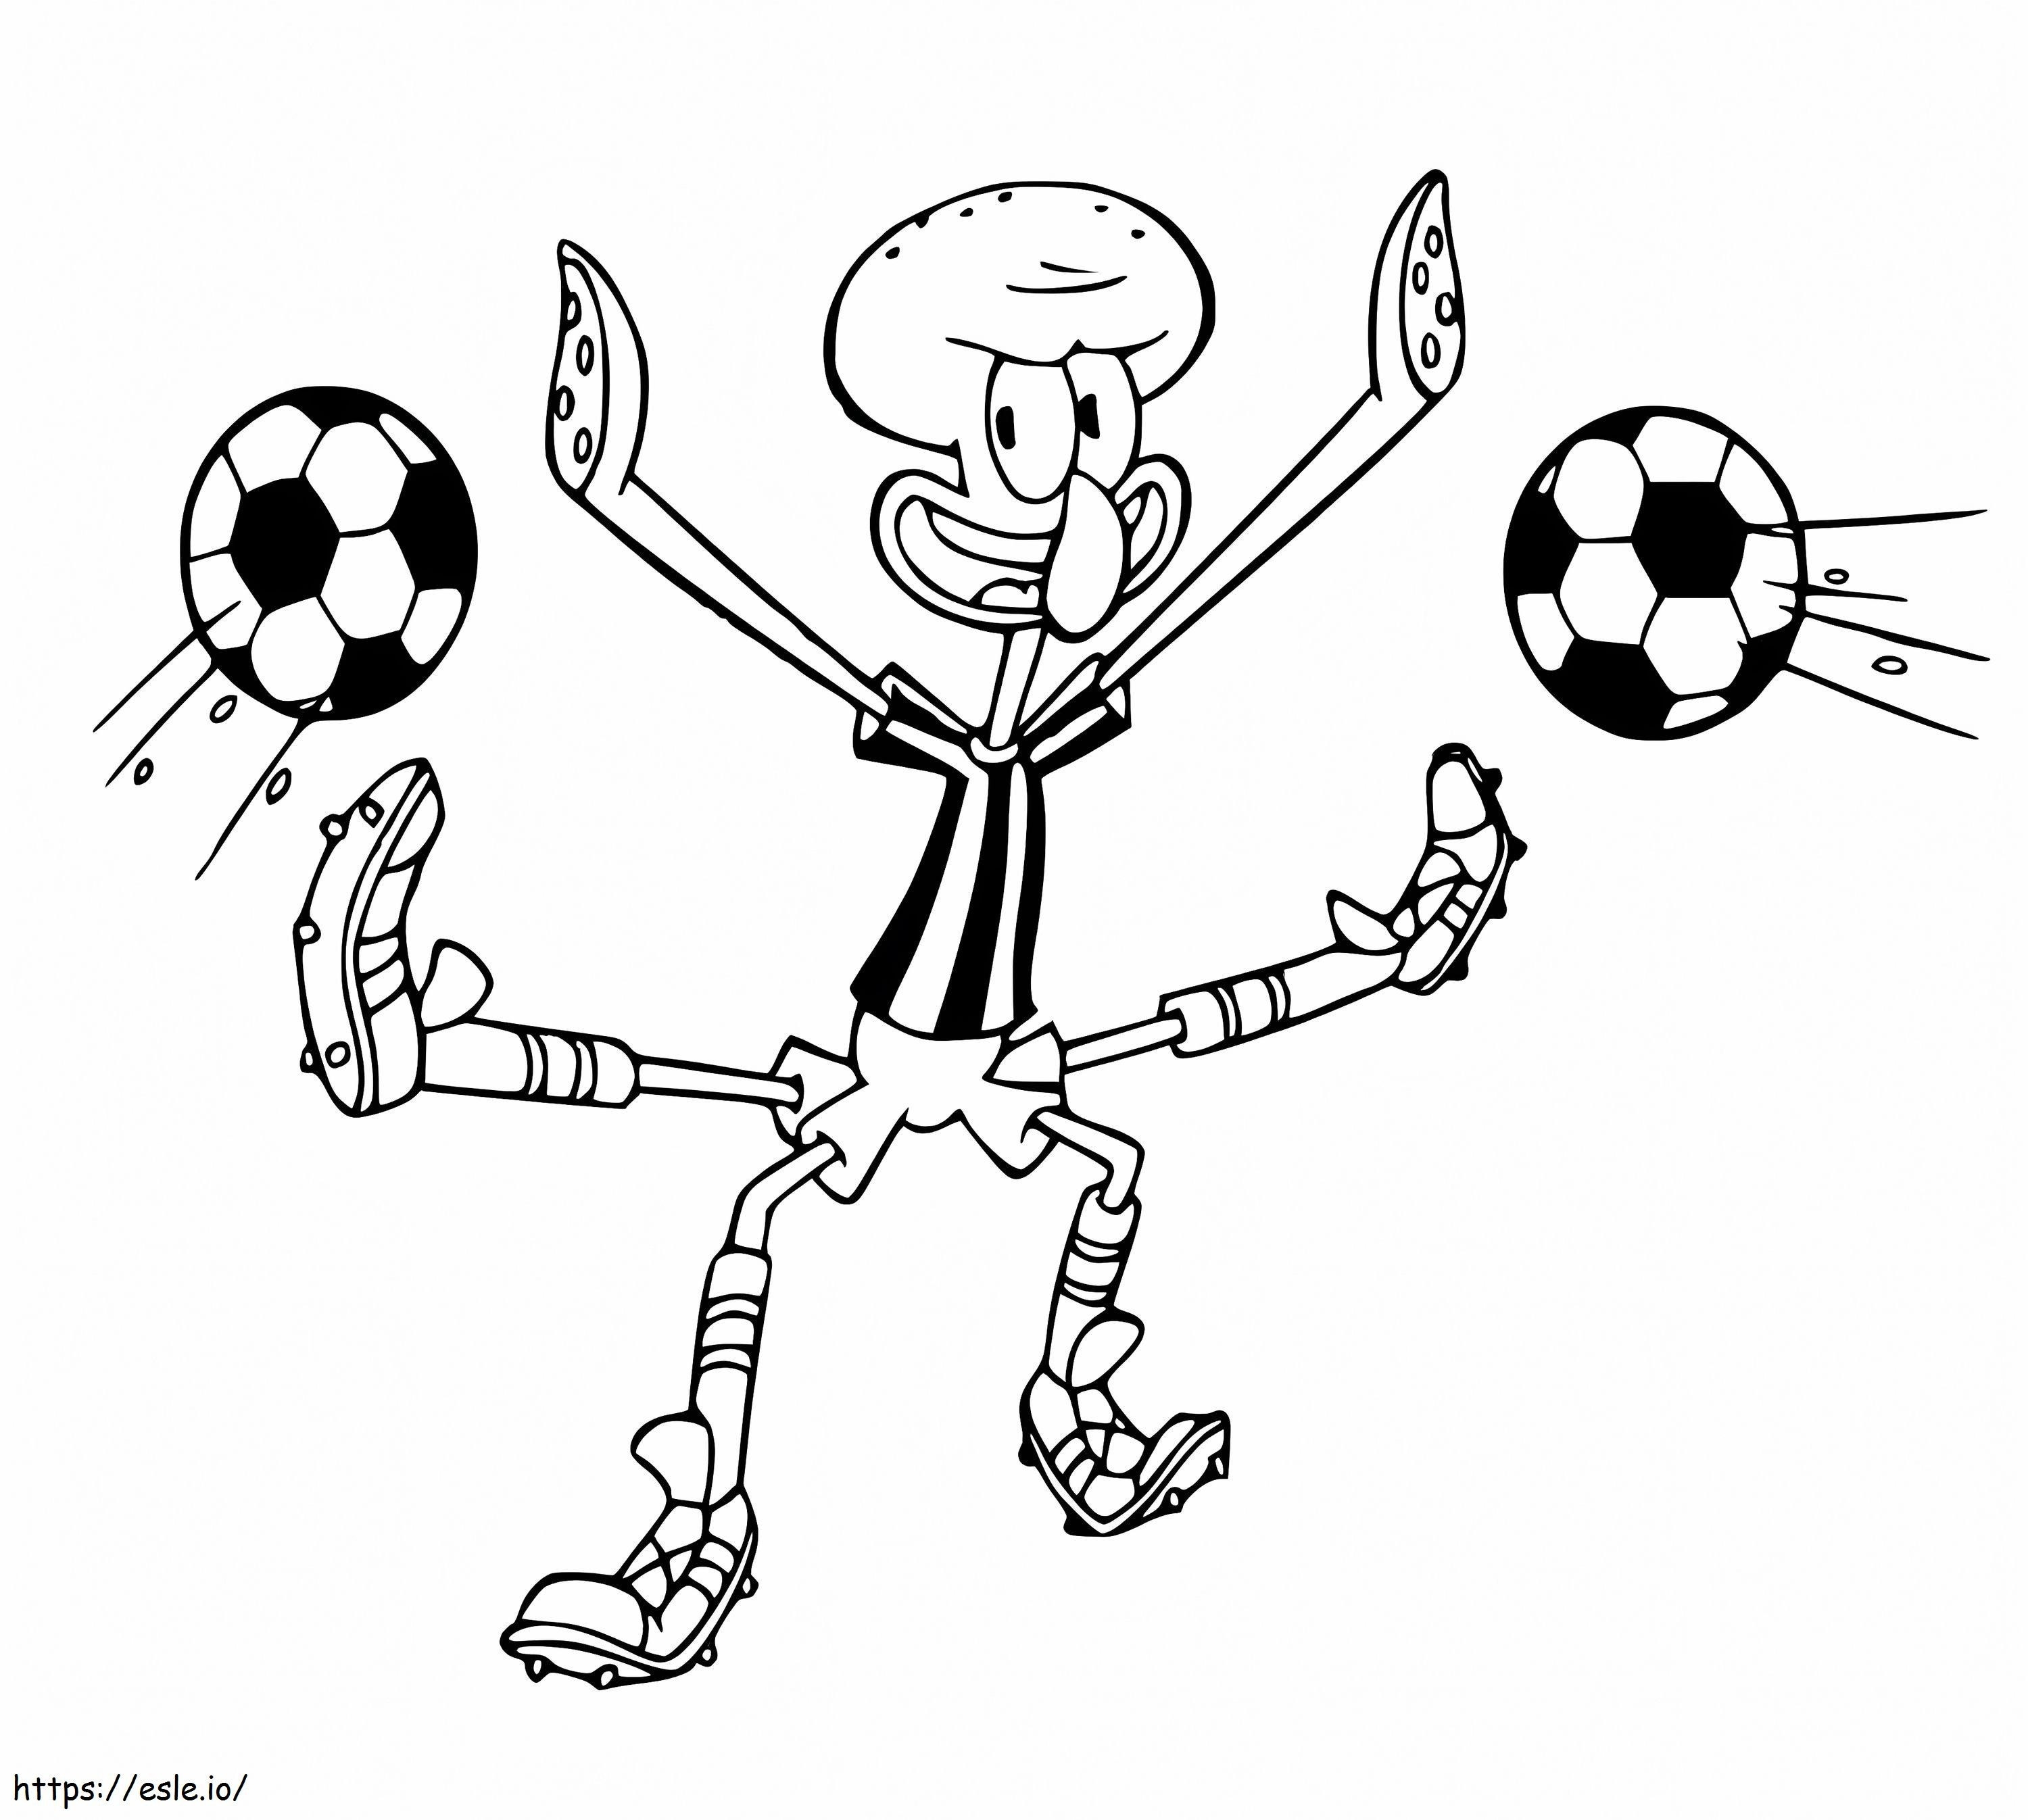 Thaddäus spielt Fußball ausmalbilder